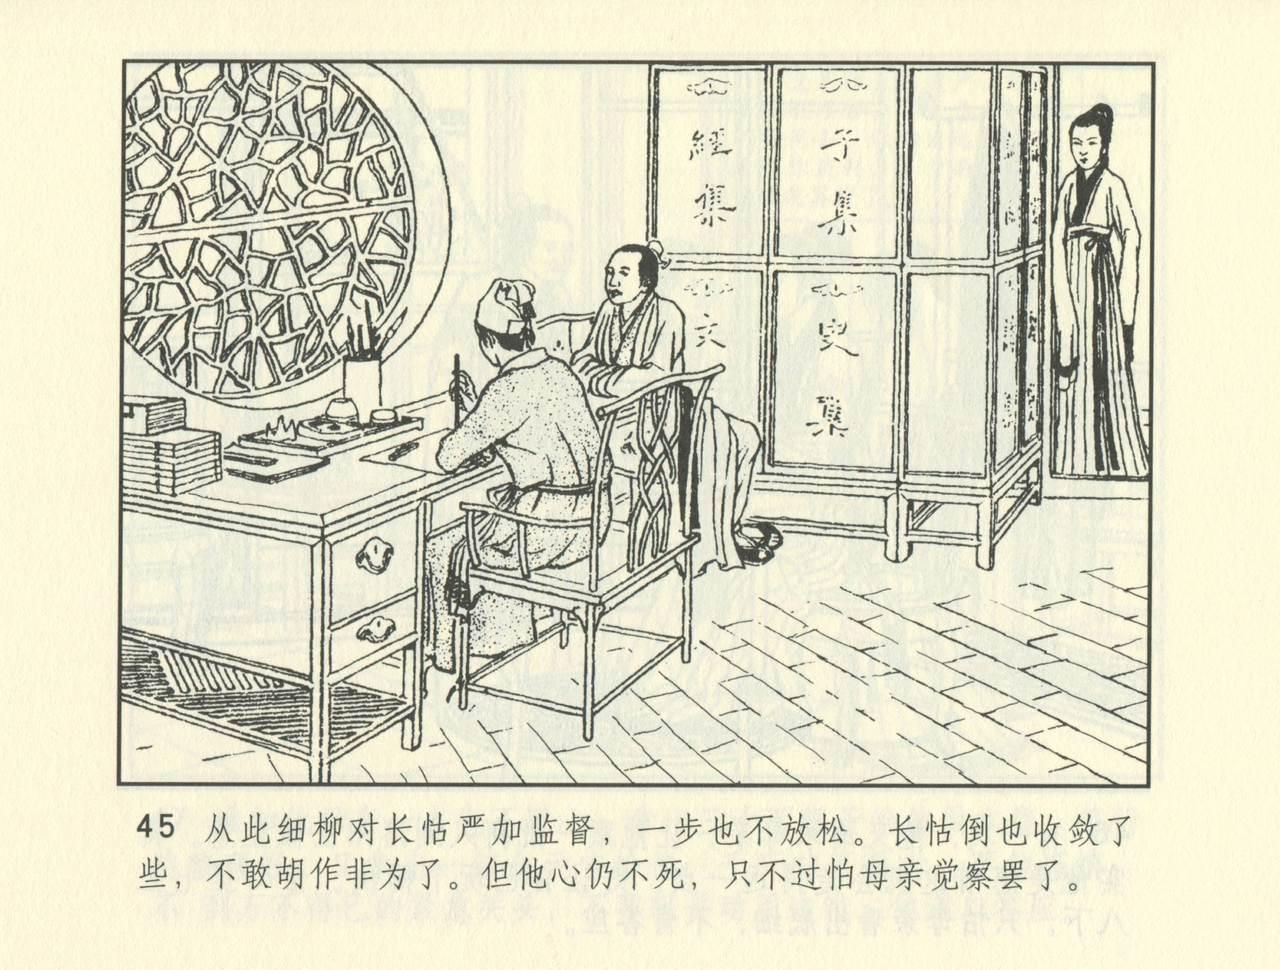 聊斋志异 张玮等绘 天津人民美术出版社 卷二十一 ~ 三十 517